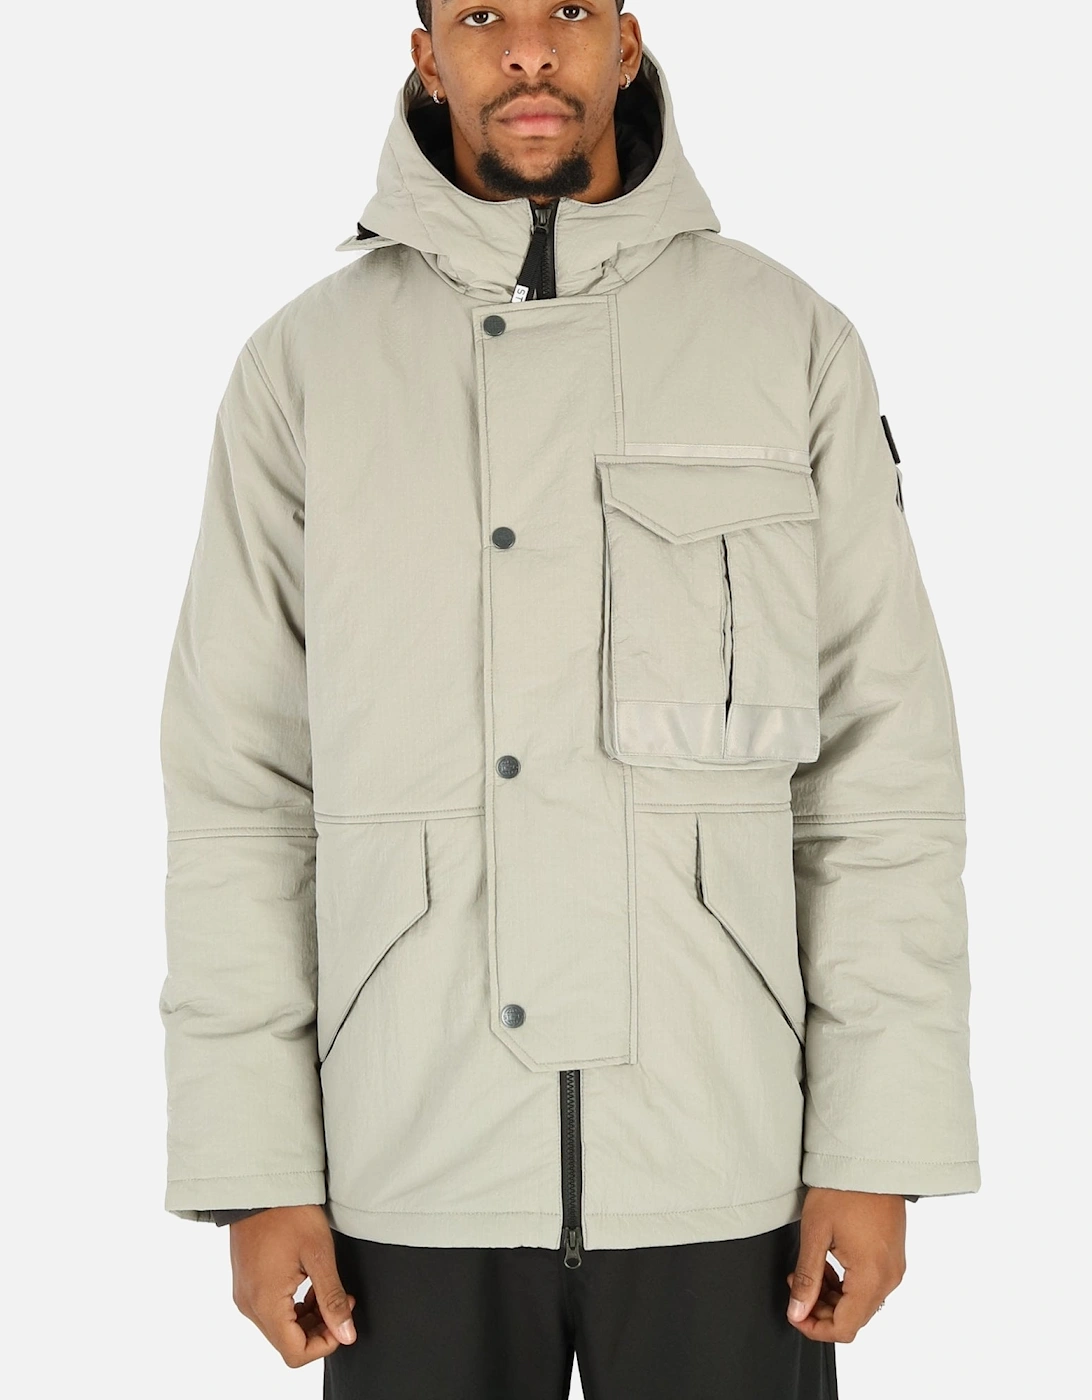 Proximity Grey Hooded Parka Jacket, 5 of 4